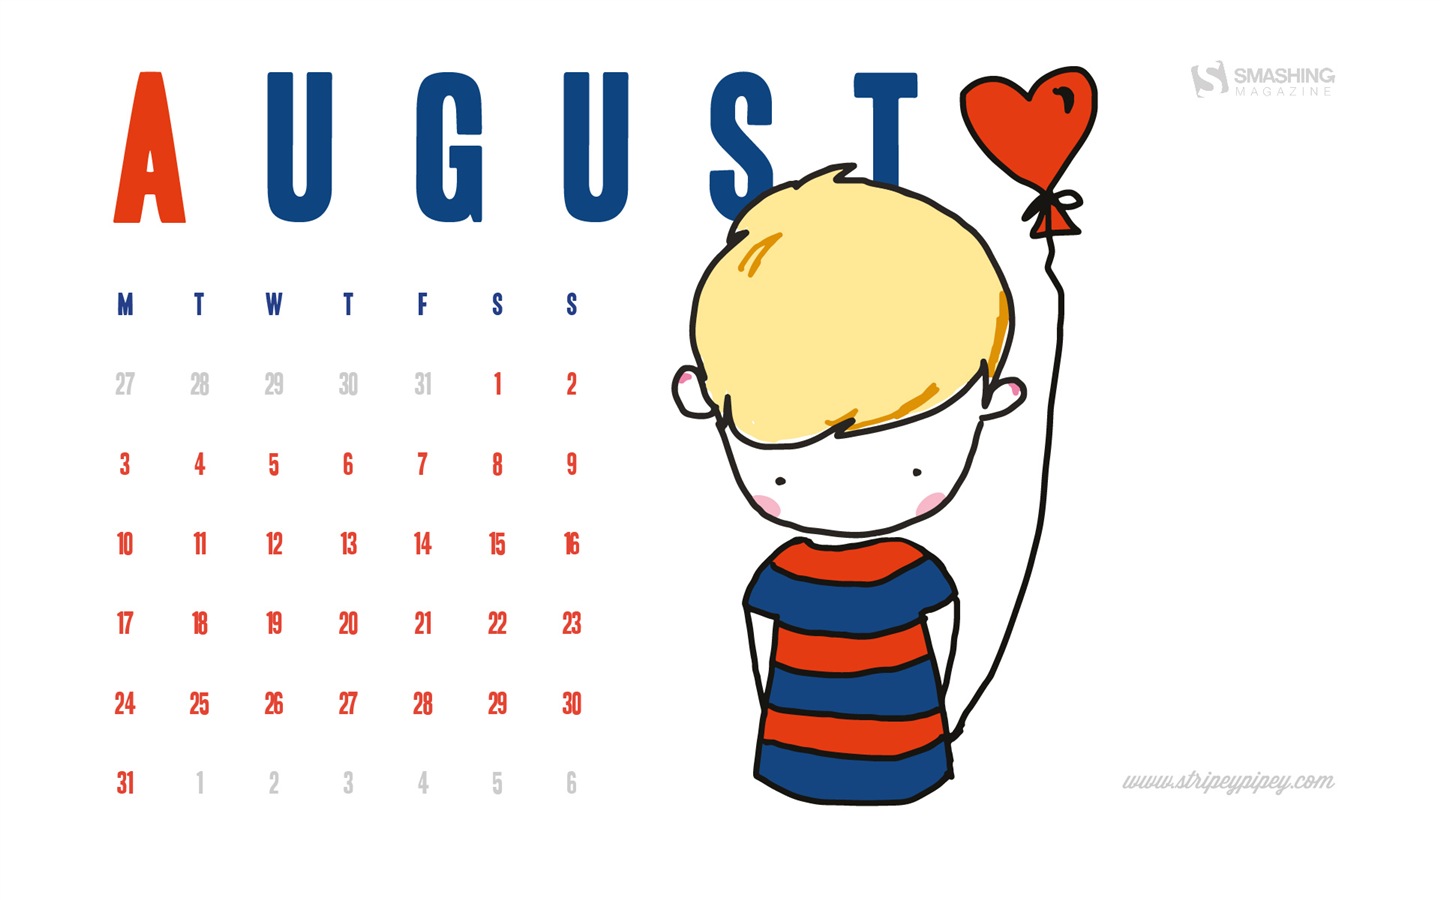 August 2015 calendar wallpaper (2) #10 - 1440x900